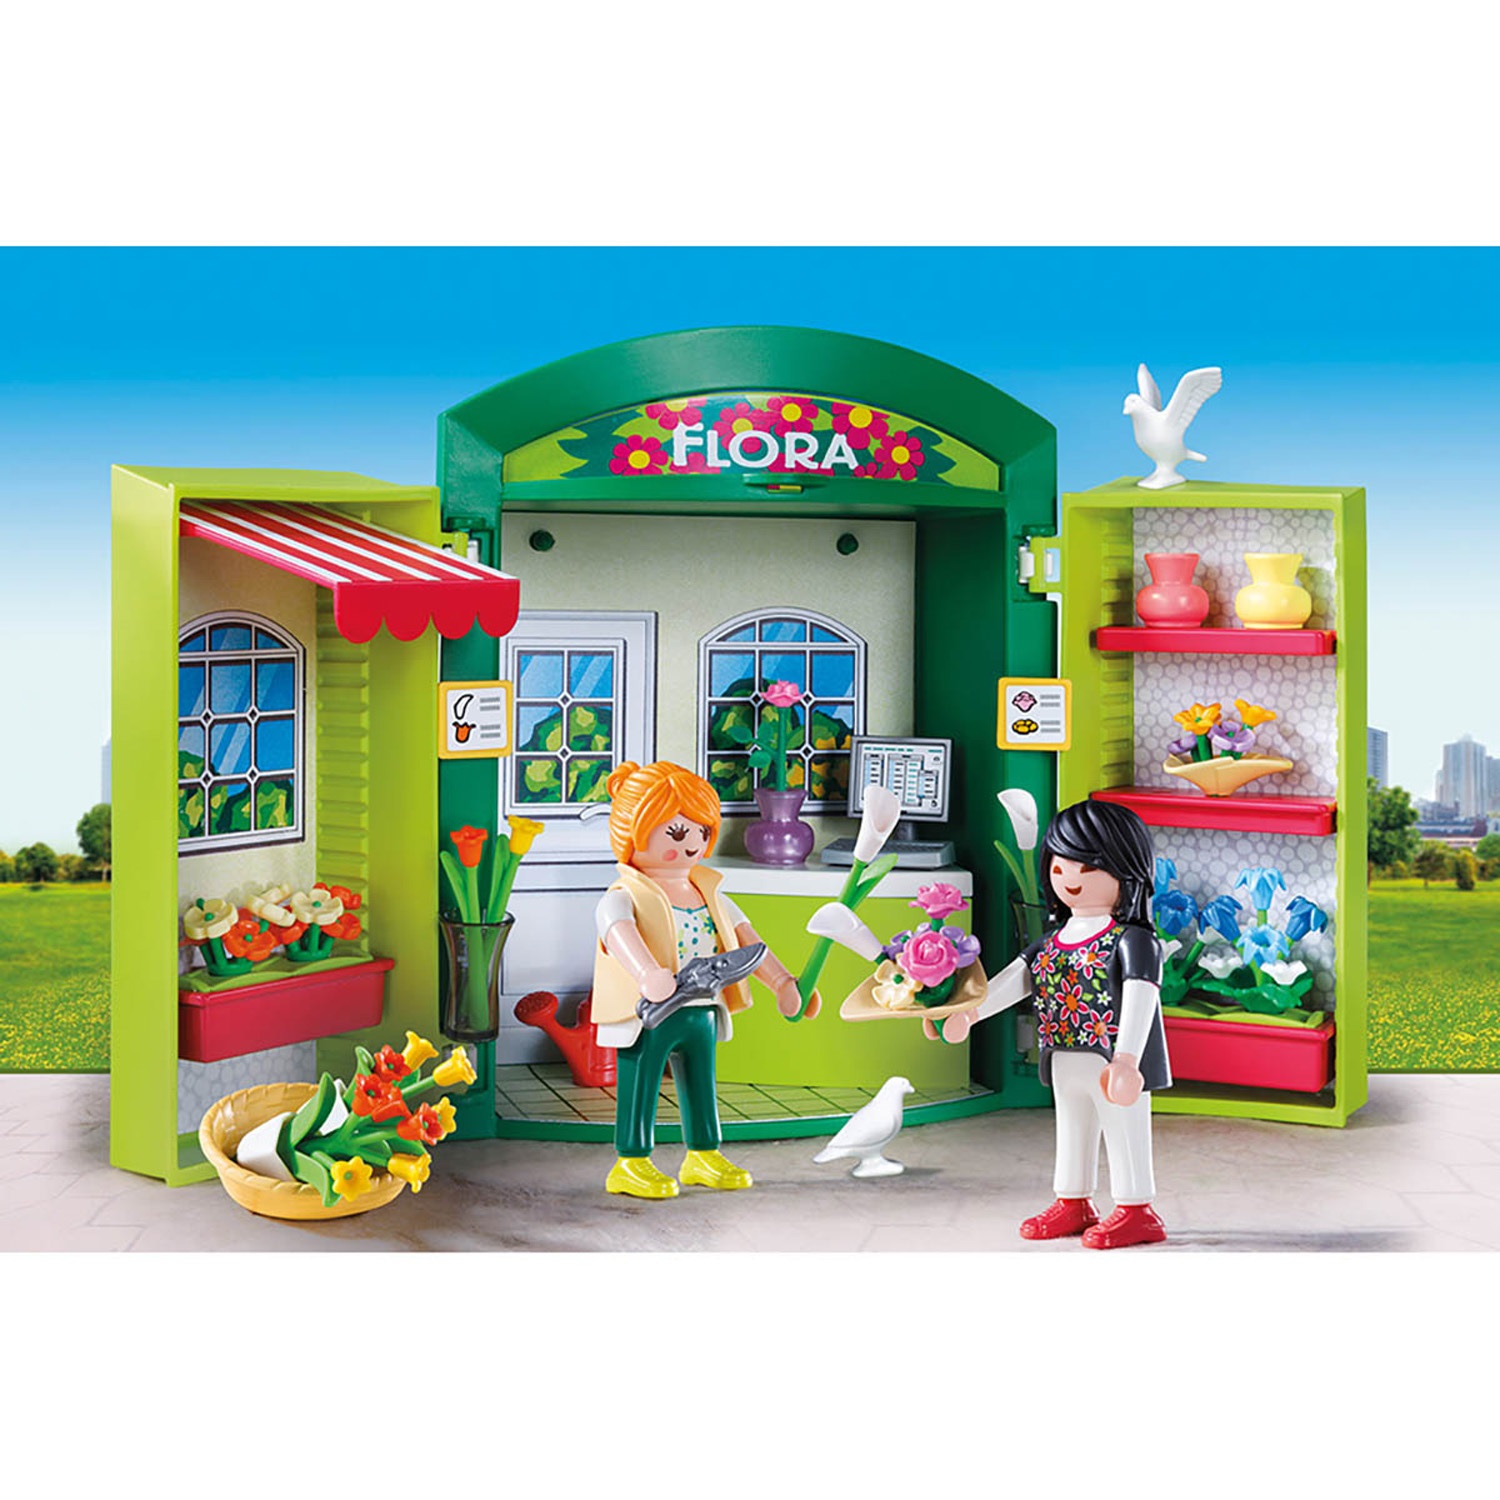 Playmobil Конструктор Цветочный магазин 5639pm - фото 3